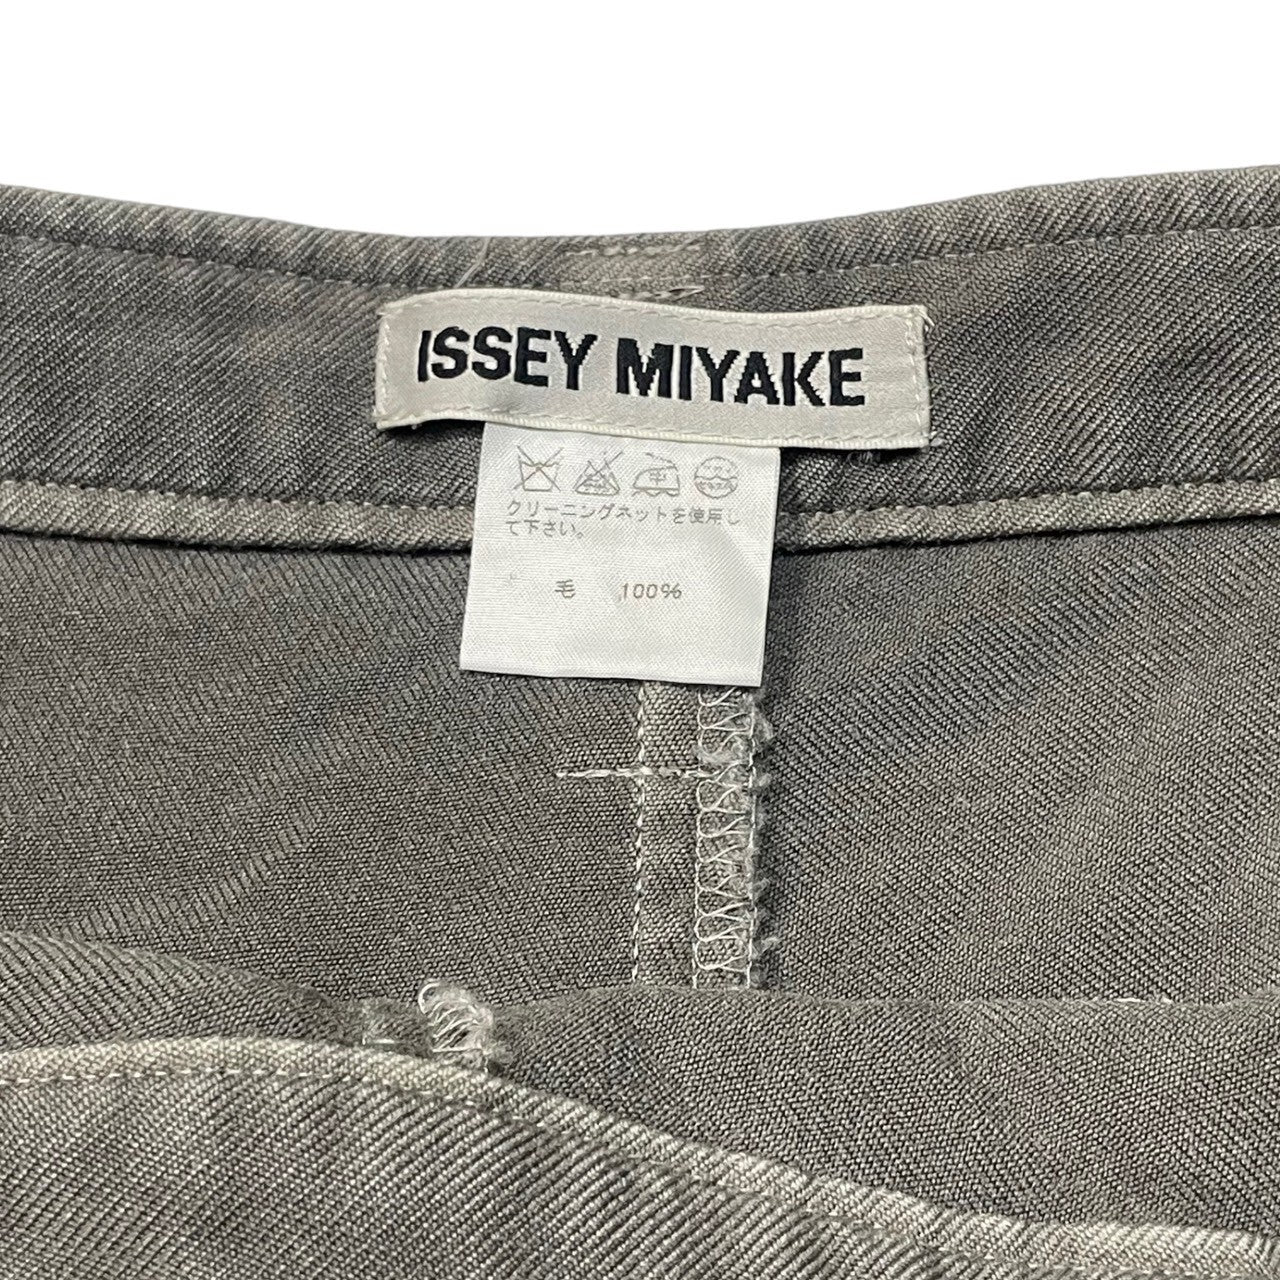 ISSEY MIYAKE(イッセイミヤケ) 00s Side-button straight wool trousers サイドボタン ストレート ウールパンツ IM33FF550 SIZE 1(S) グレー 薄シミ、裾上げ有